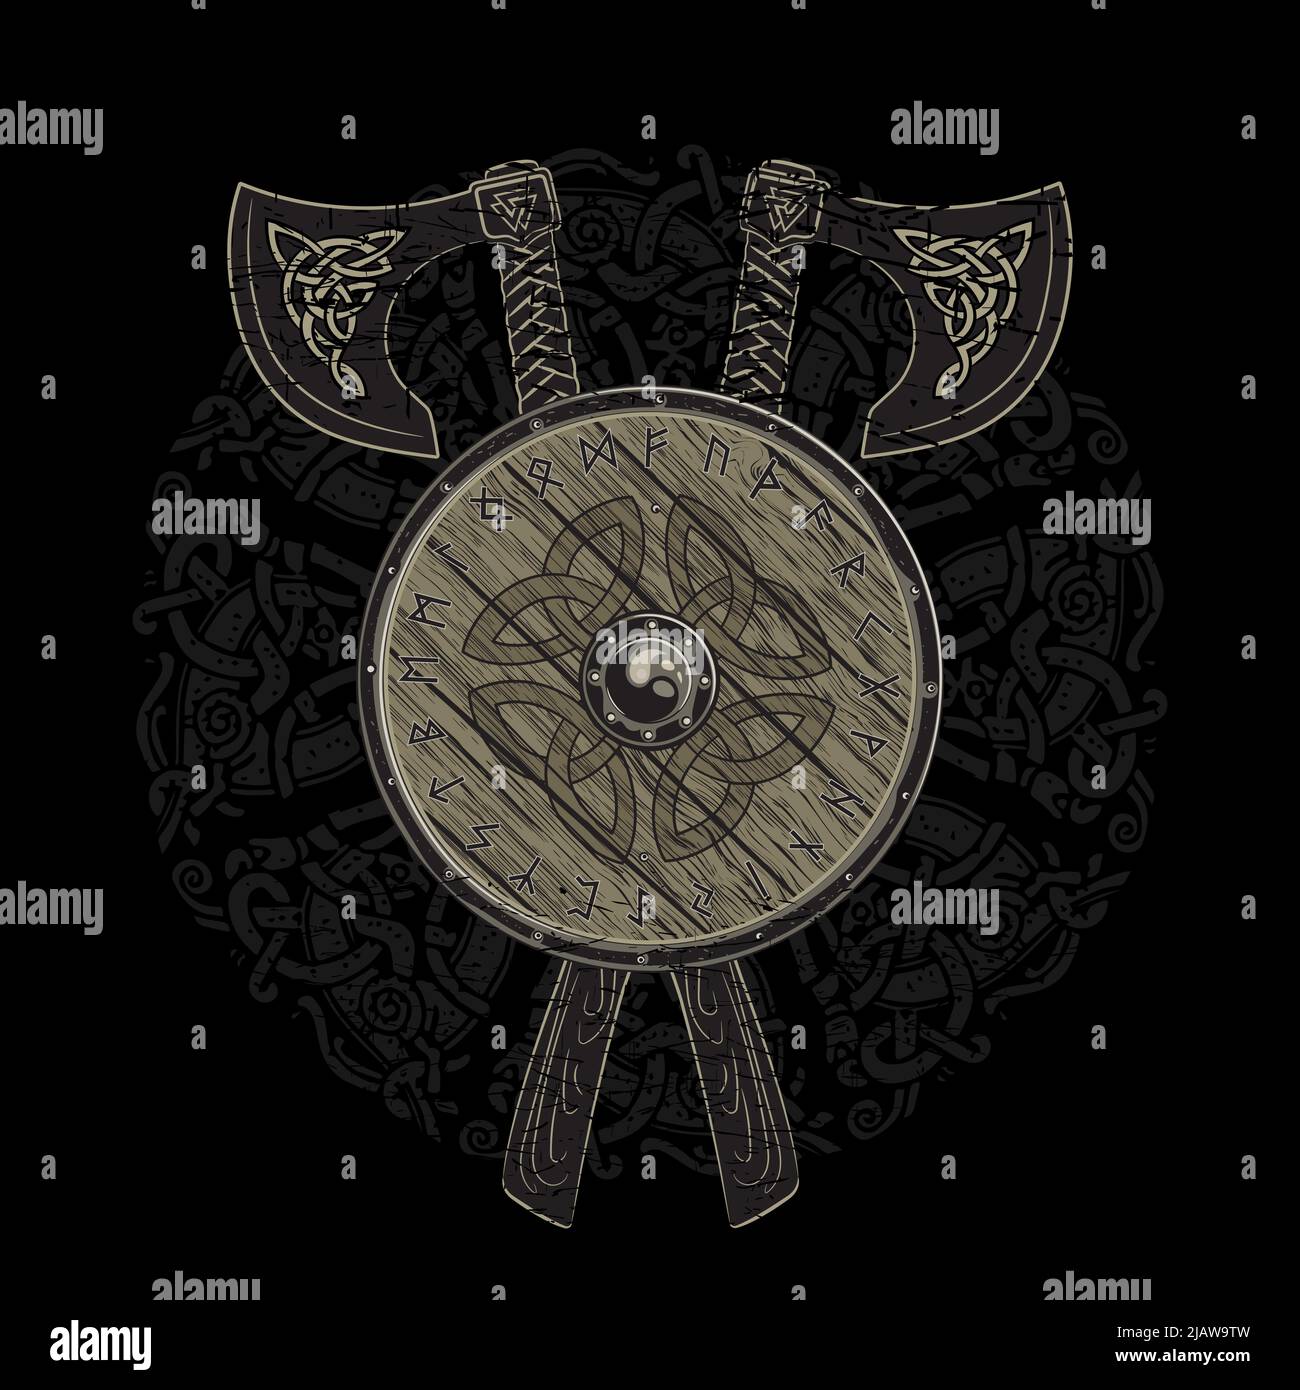 Le design viking, les haches de bataille viking croisées et le bouclier d'un viking avec les runes scandinaves Illustration de Vecteur